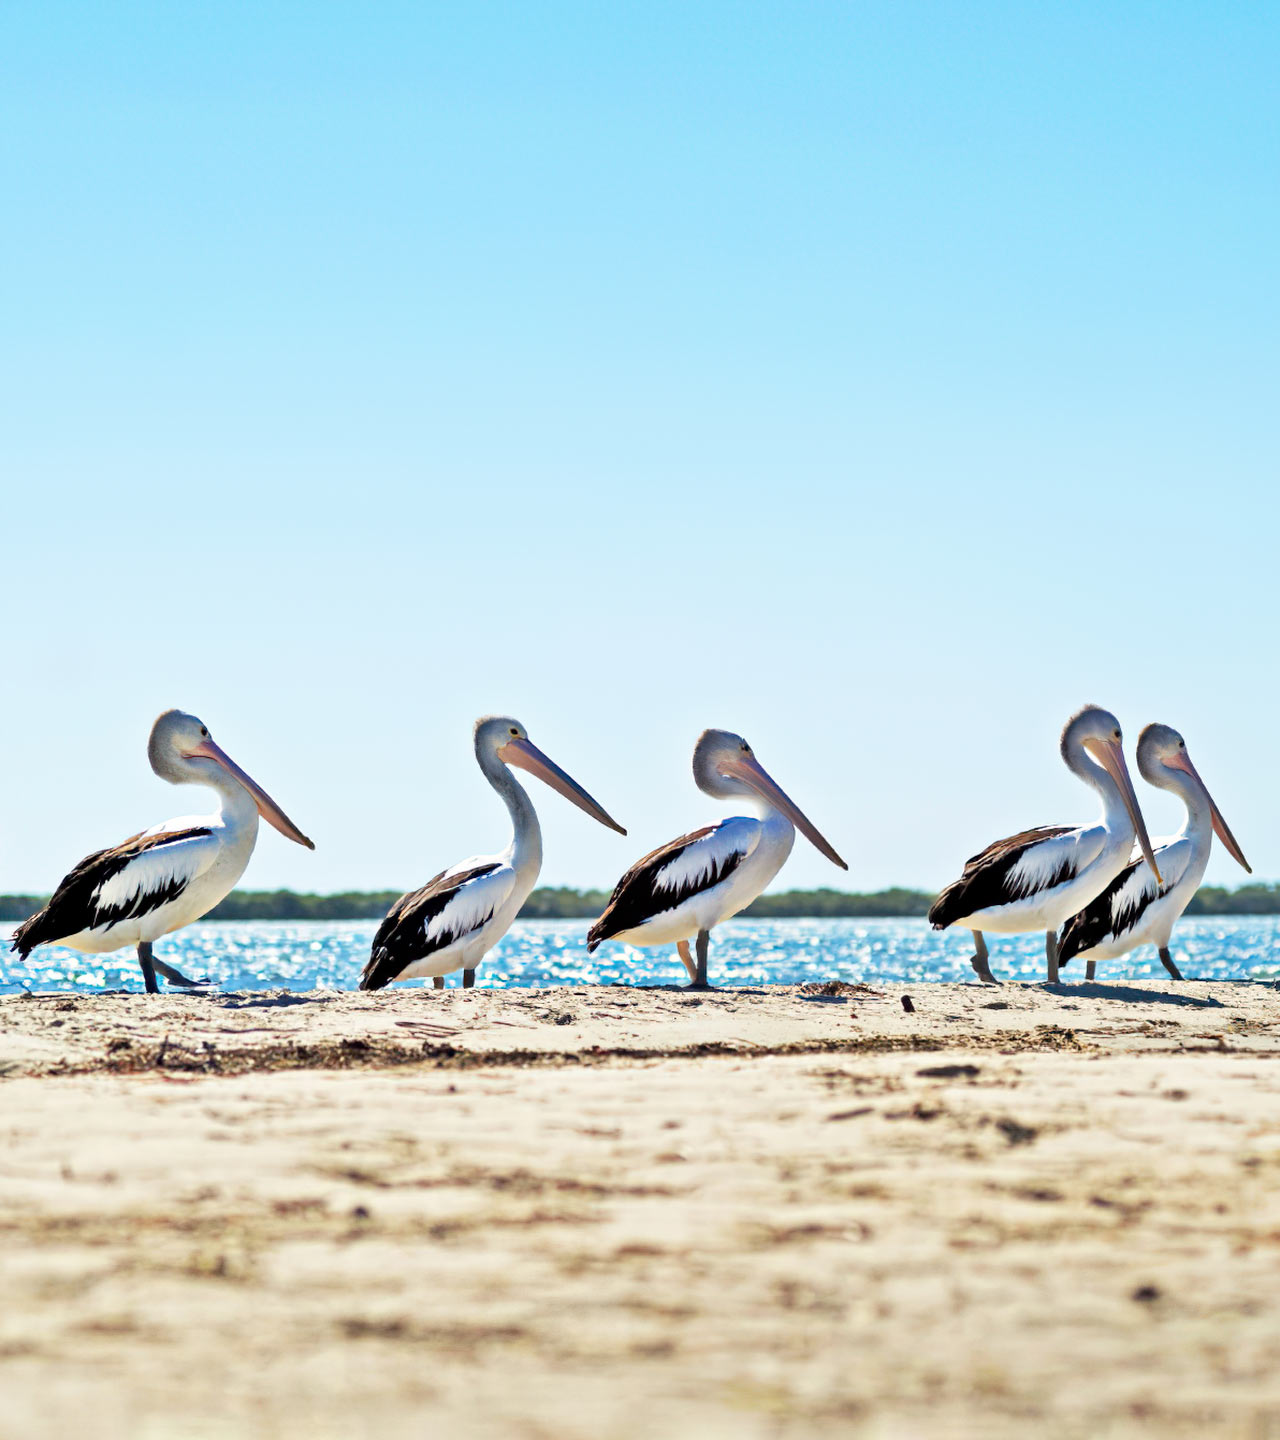 Pelicans in Australia